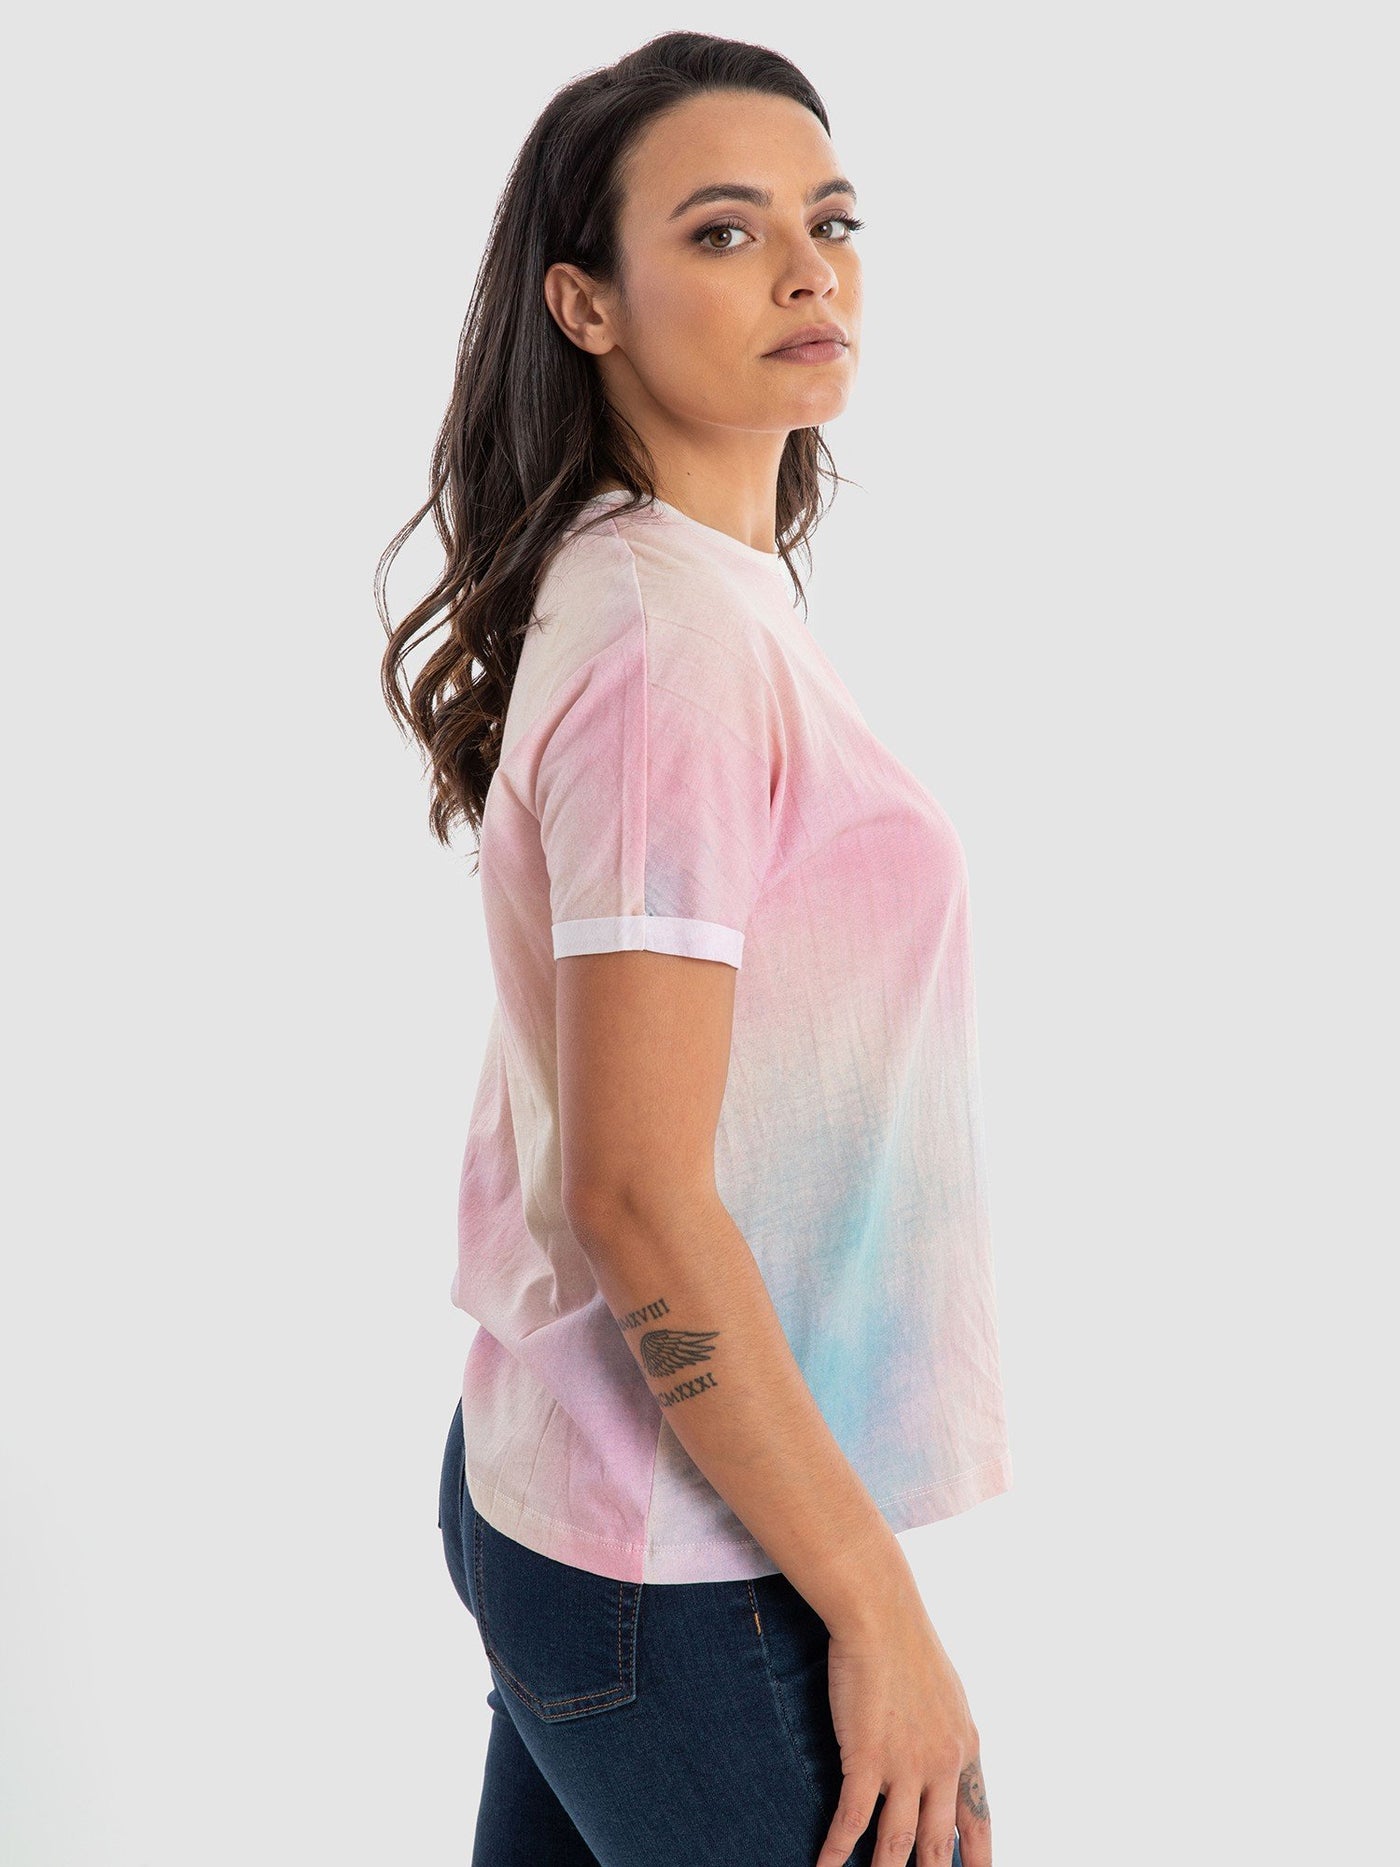 Premoda Womens Tye-Dye T-Shirt